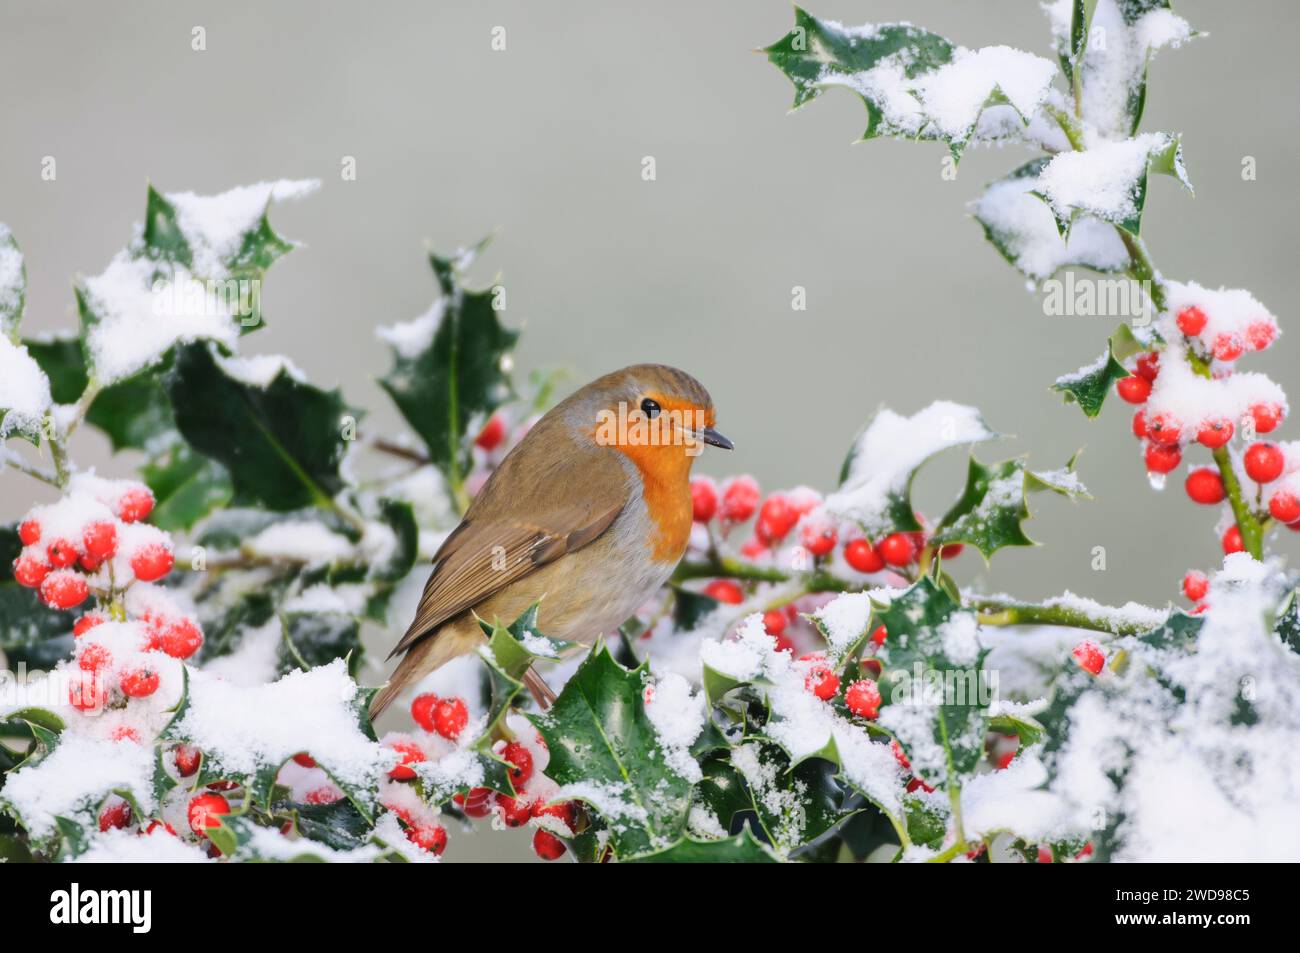 Robin européen erithacus rubecula, perché dans le houx avec des baies couvertes de neige, février. Banque D'Images